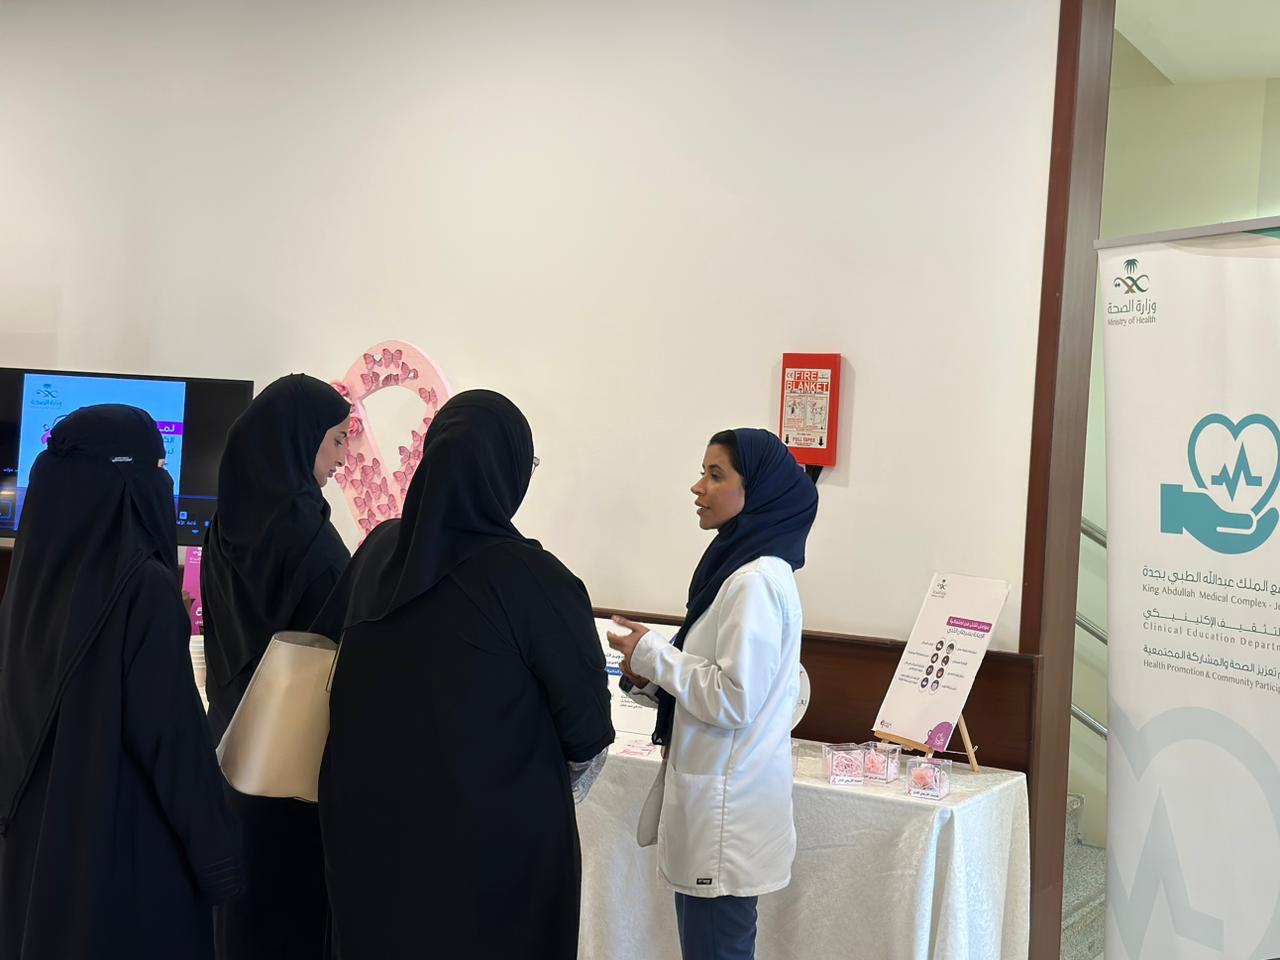 مجمع الملك عبدالله الطبي بجدة يُقيم برنامجاً للتوعية بسرطان الثدي